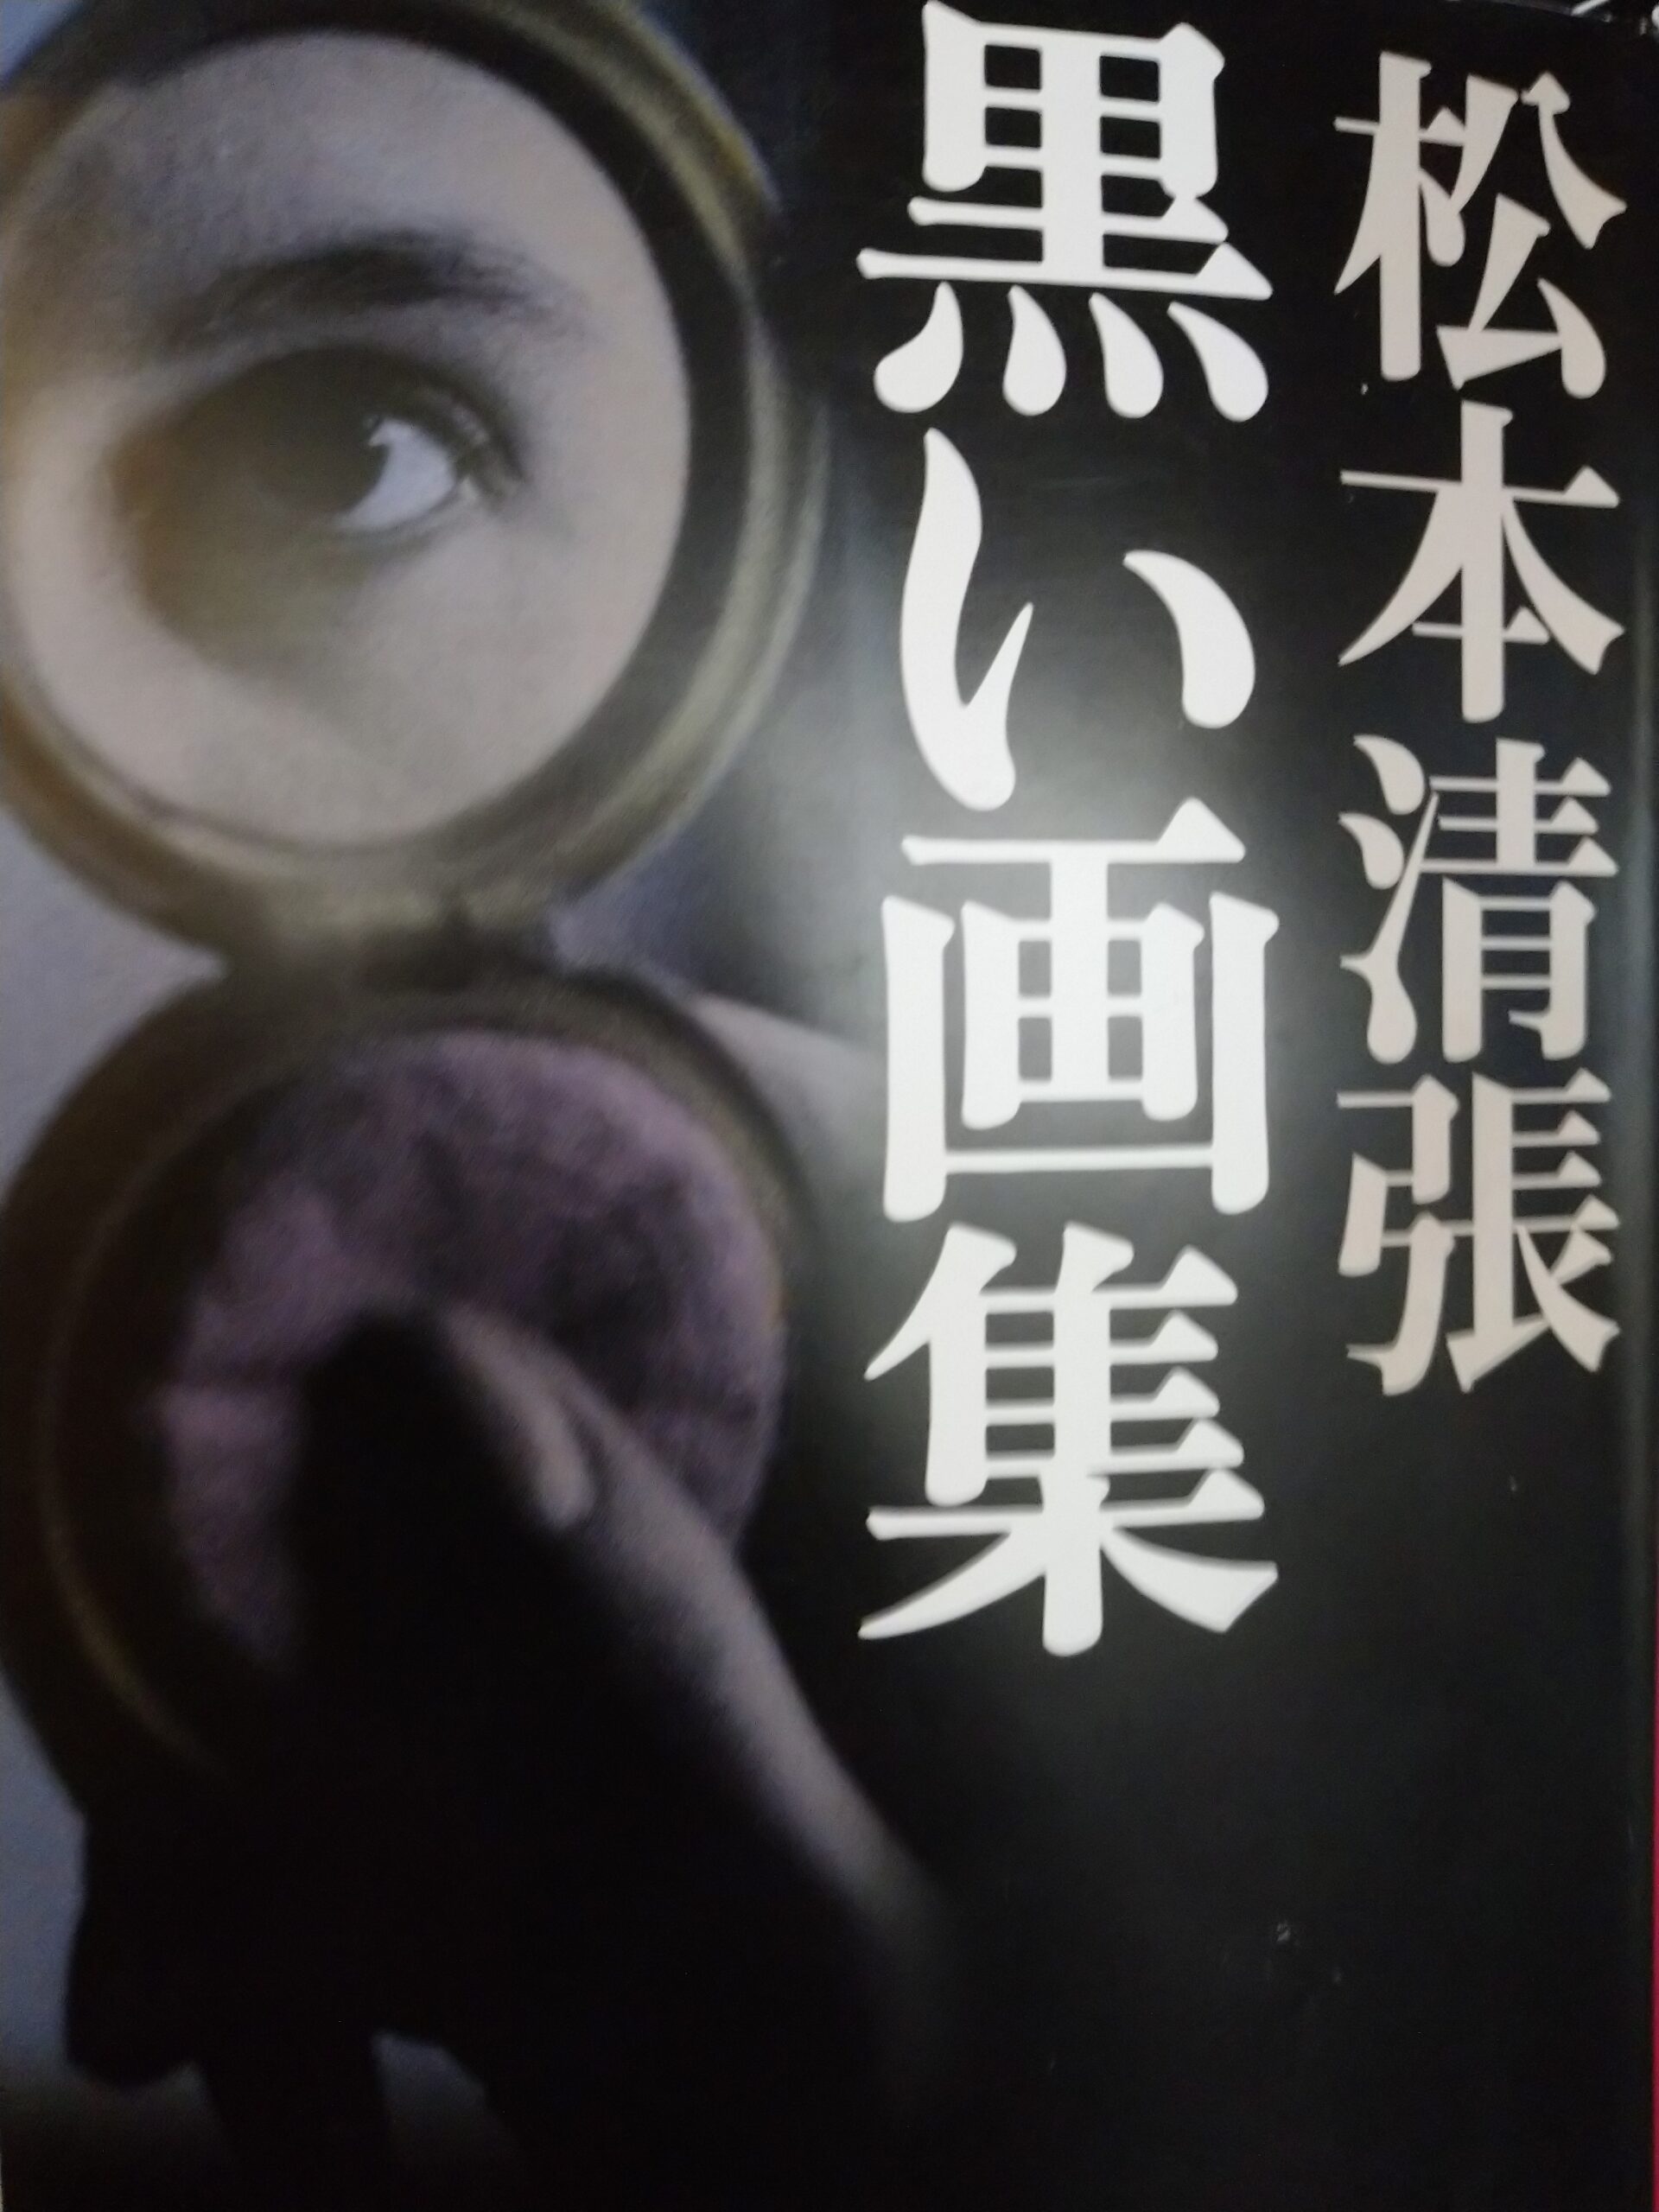 松本清張の本「黒い画集」の表紙の写真